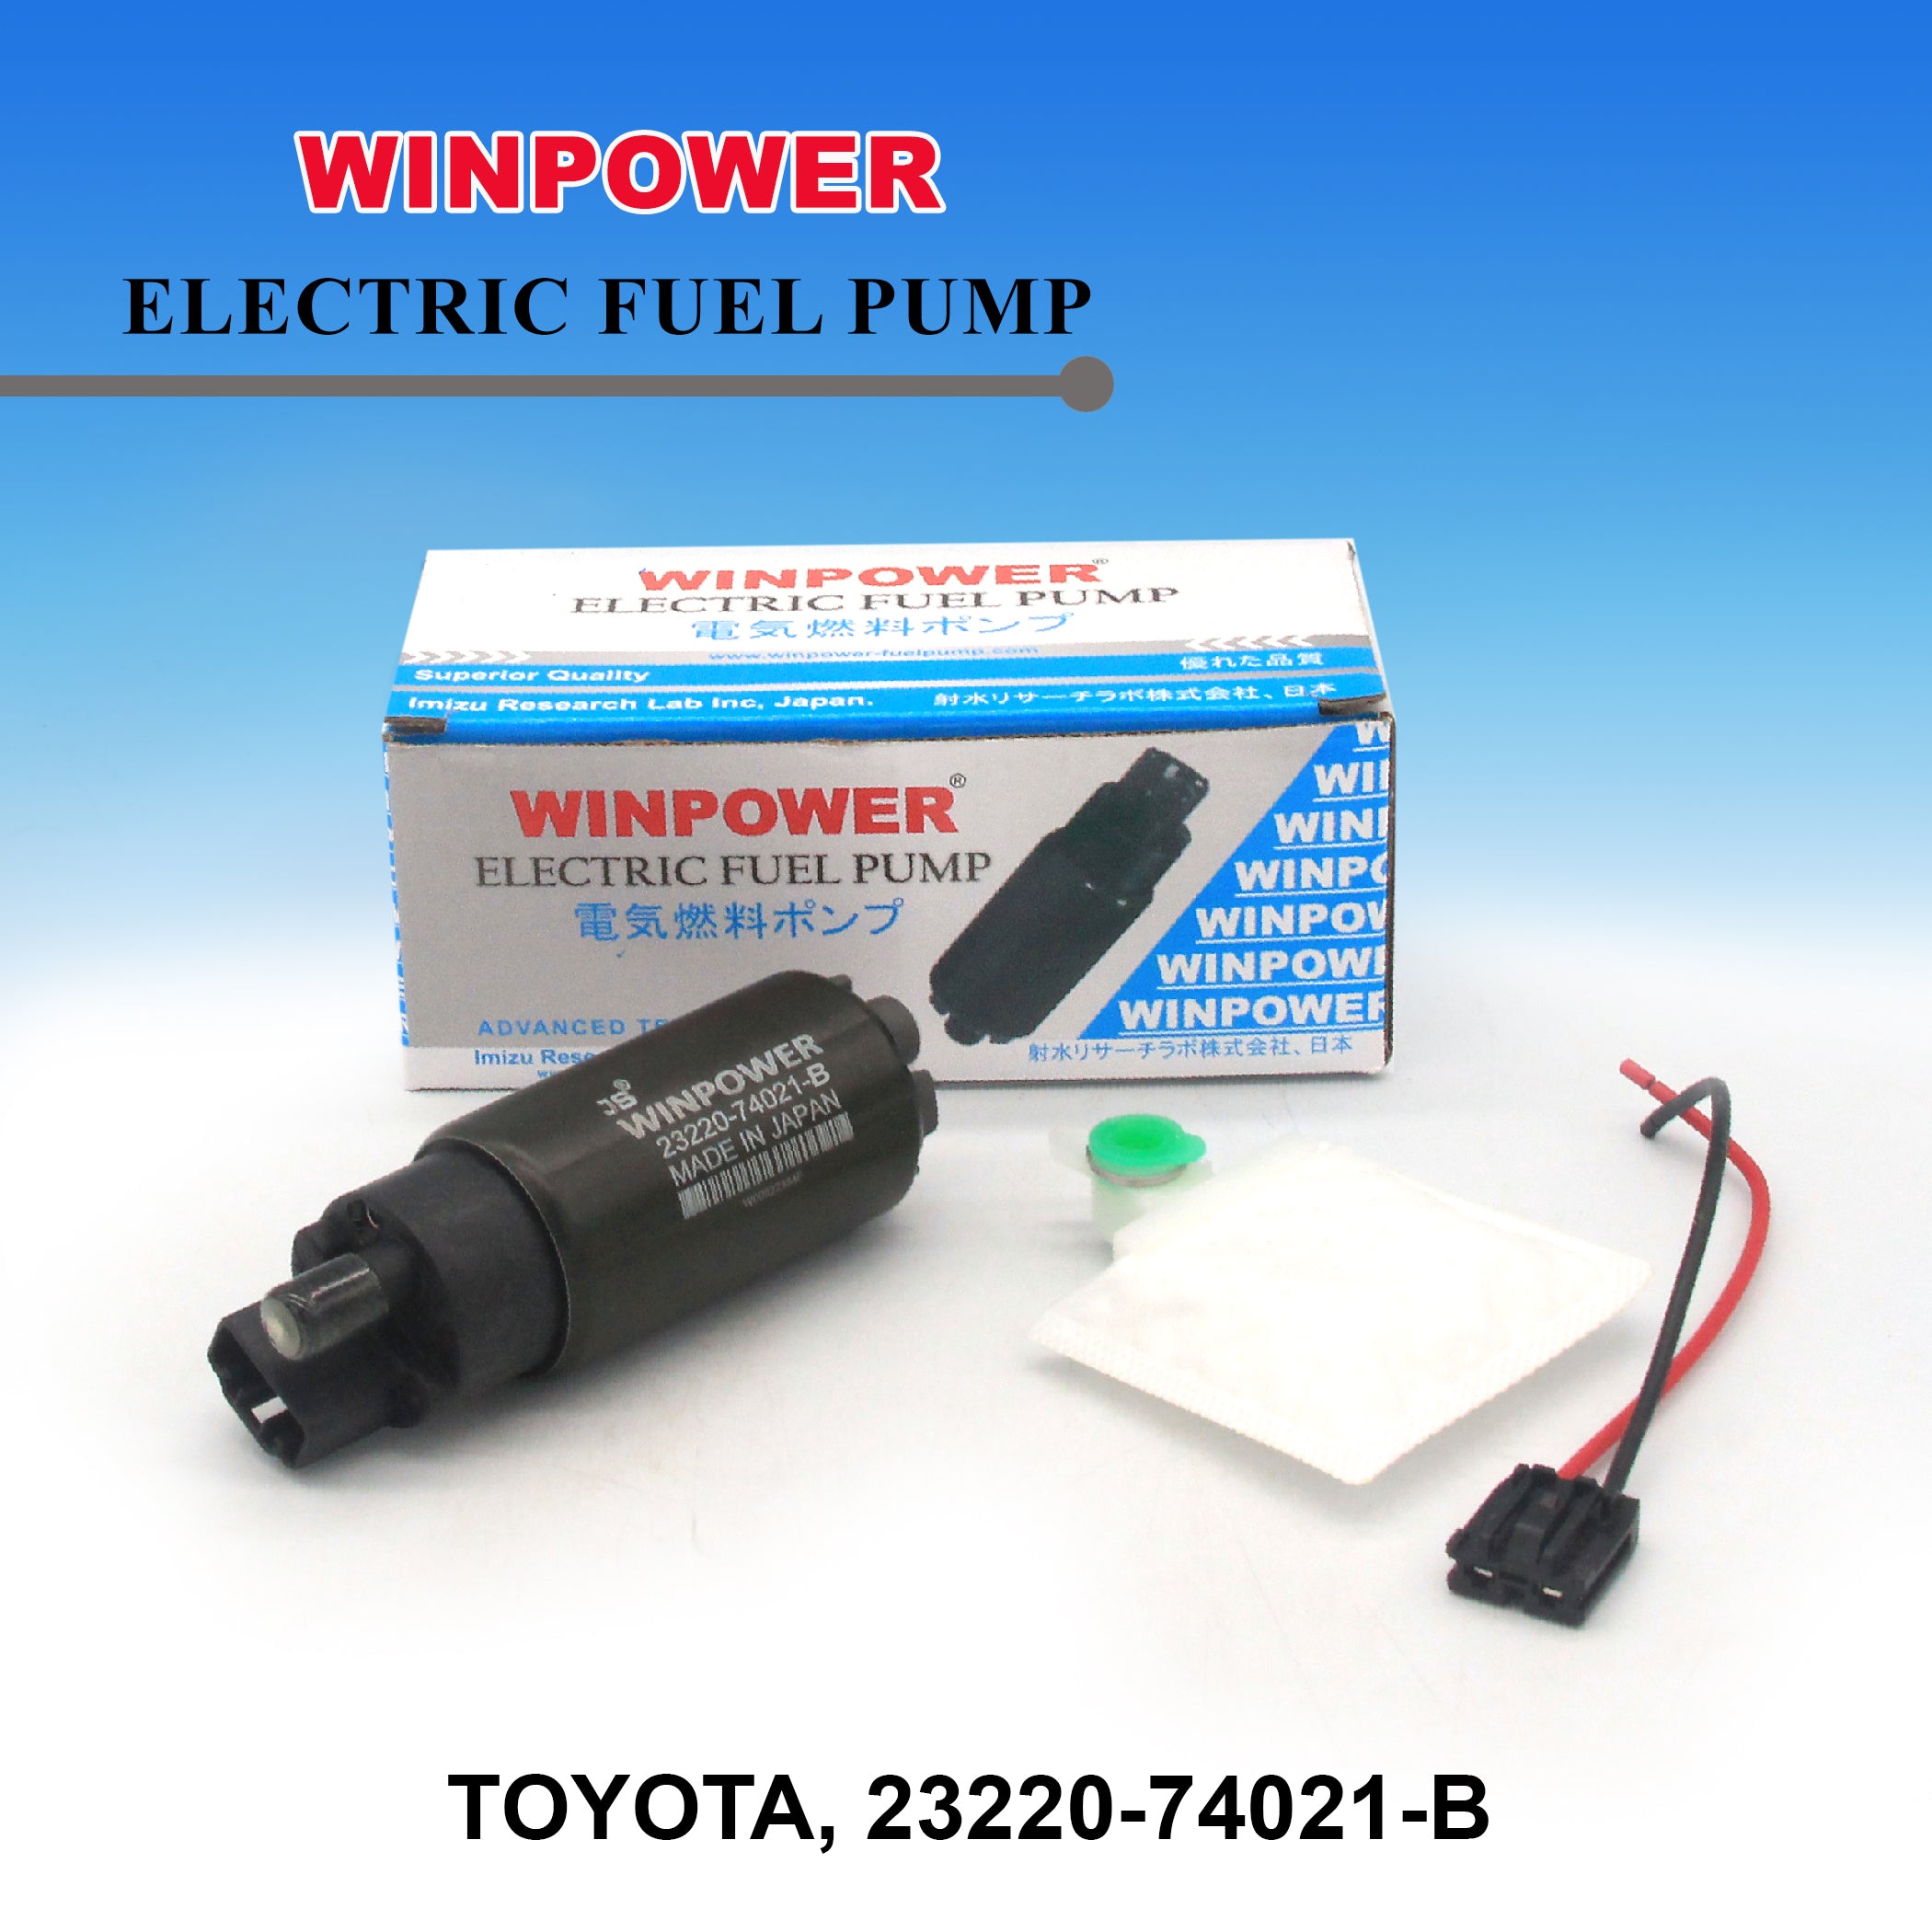 In-Tank Fuel Pump, (Small) WINPOWER, Big Pin, 23220-74021-B, WF-3801 (003427)